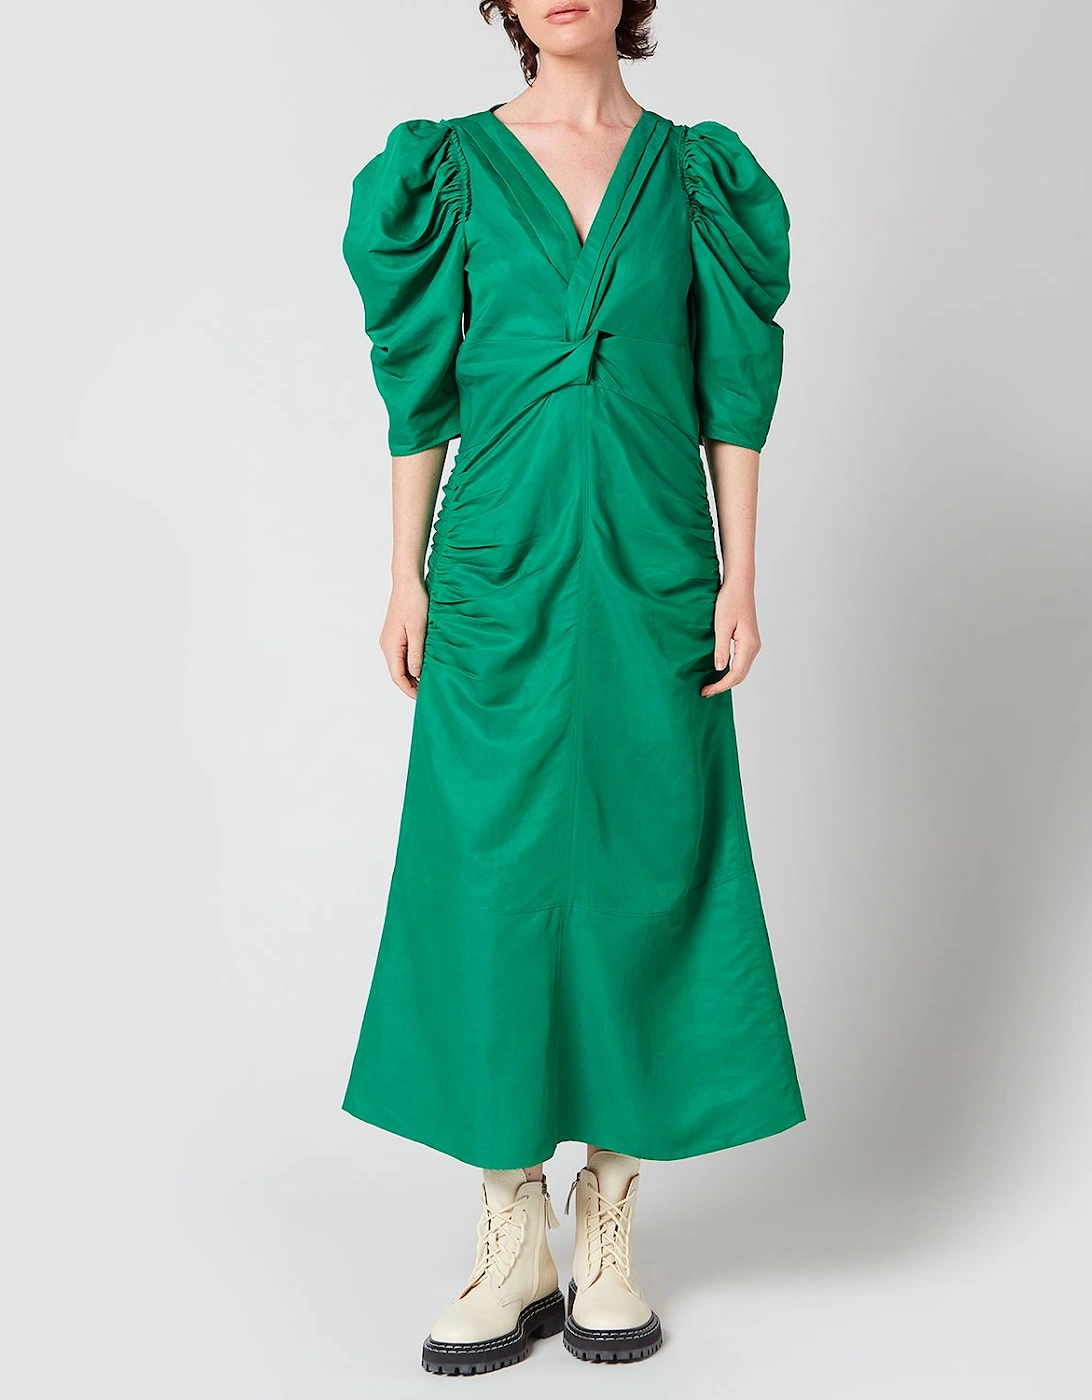 Women's Linen Viscose Shirred Sleeve Dress - Bright Green - - Home - Women's Linen Viscose Shirred Sleeve Dress - Bright Green